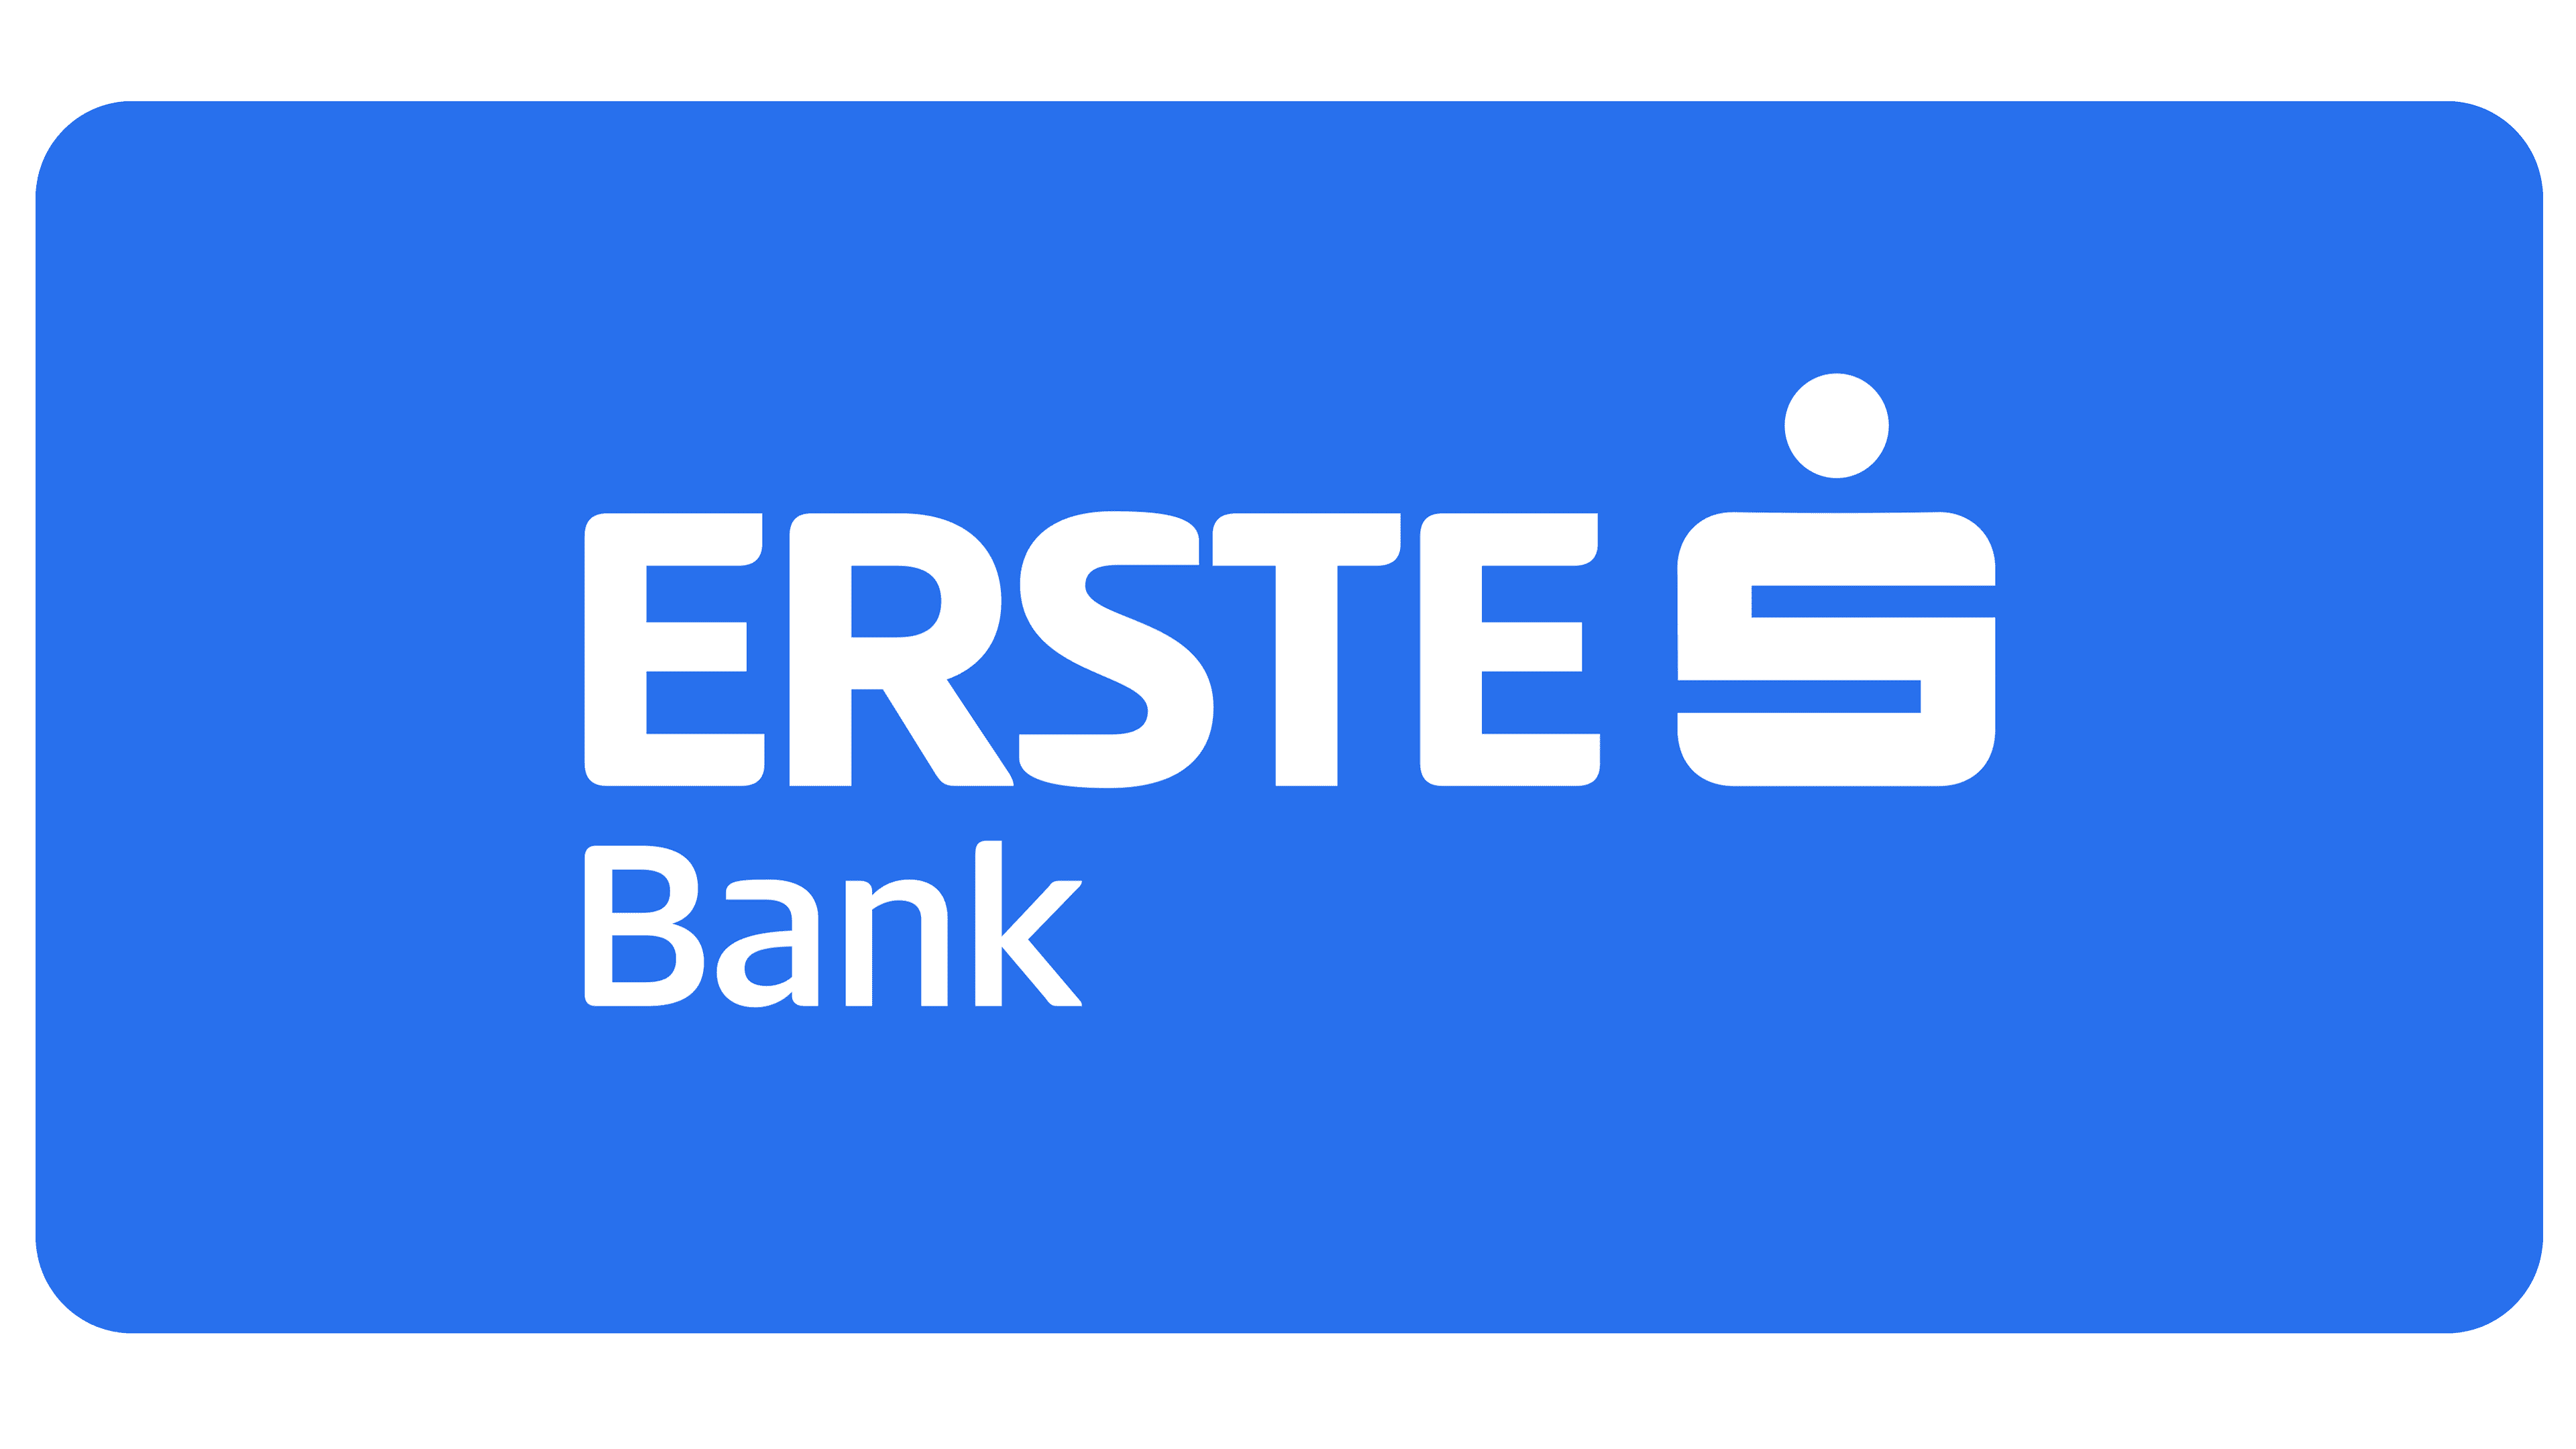 2016 Erste Bank Open - Wikipedia